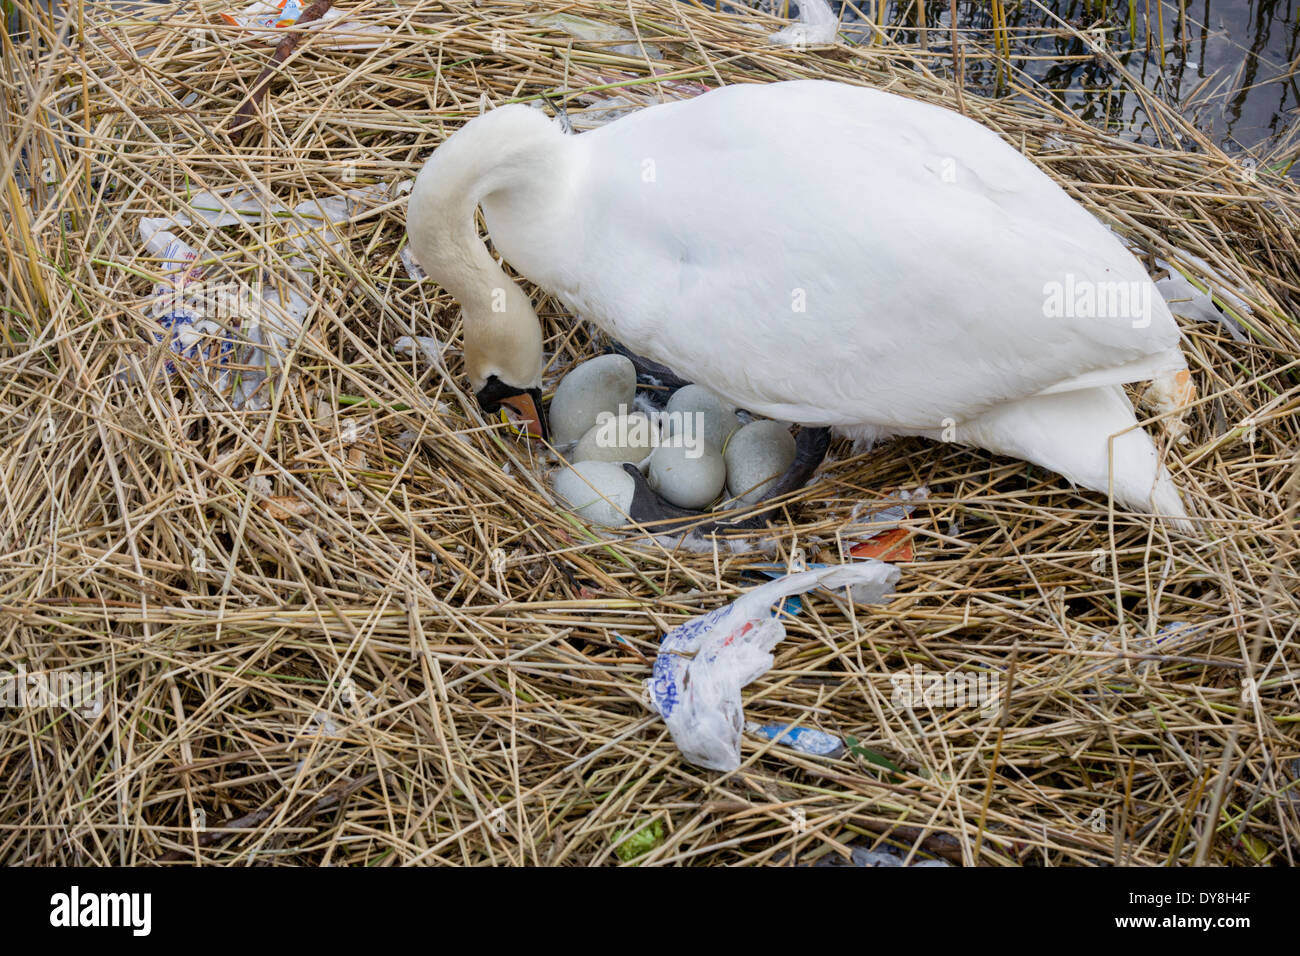 Une femelle cygne muet (pen) couve ses œufs sur un nid entouré de sacs en  plastique, des déchets dans un bassin d'eau en milieu urbain Photo Stock -  Alamy